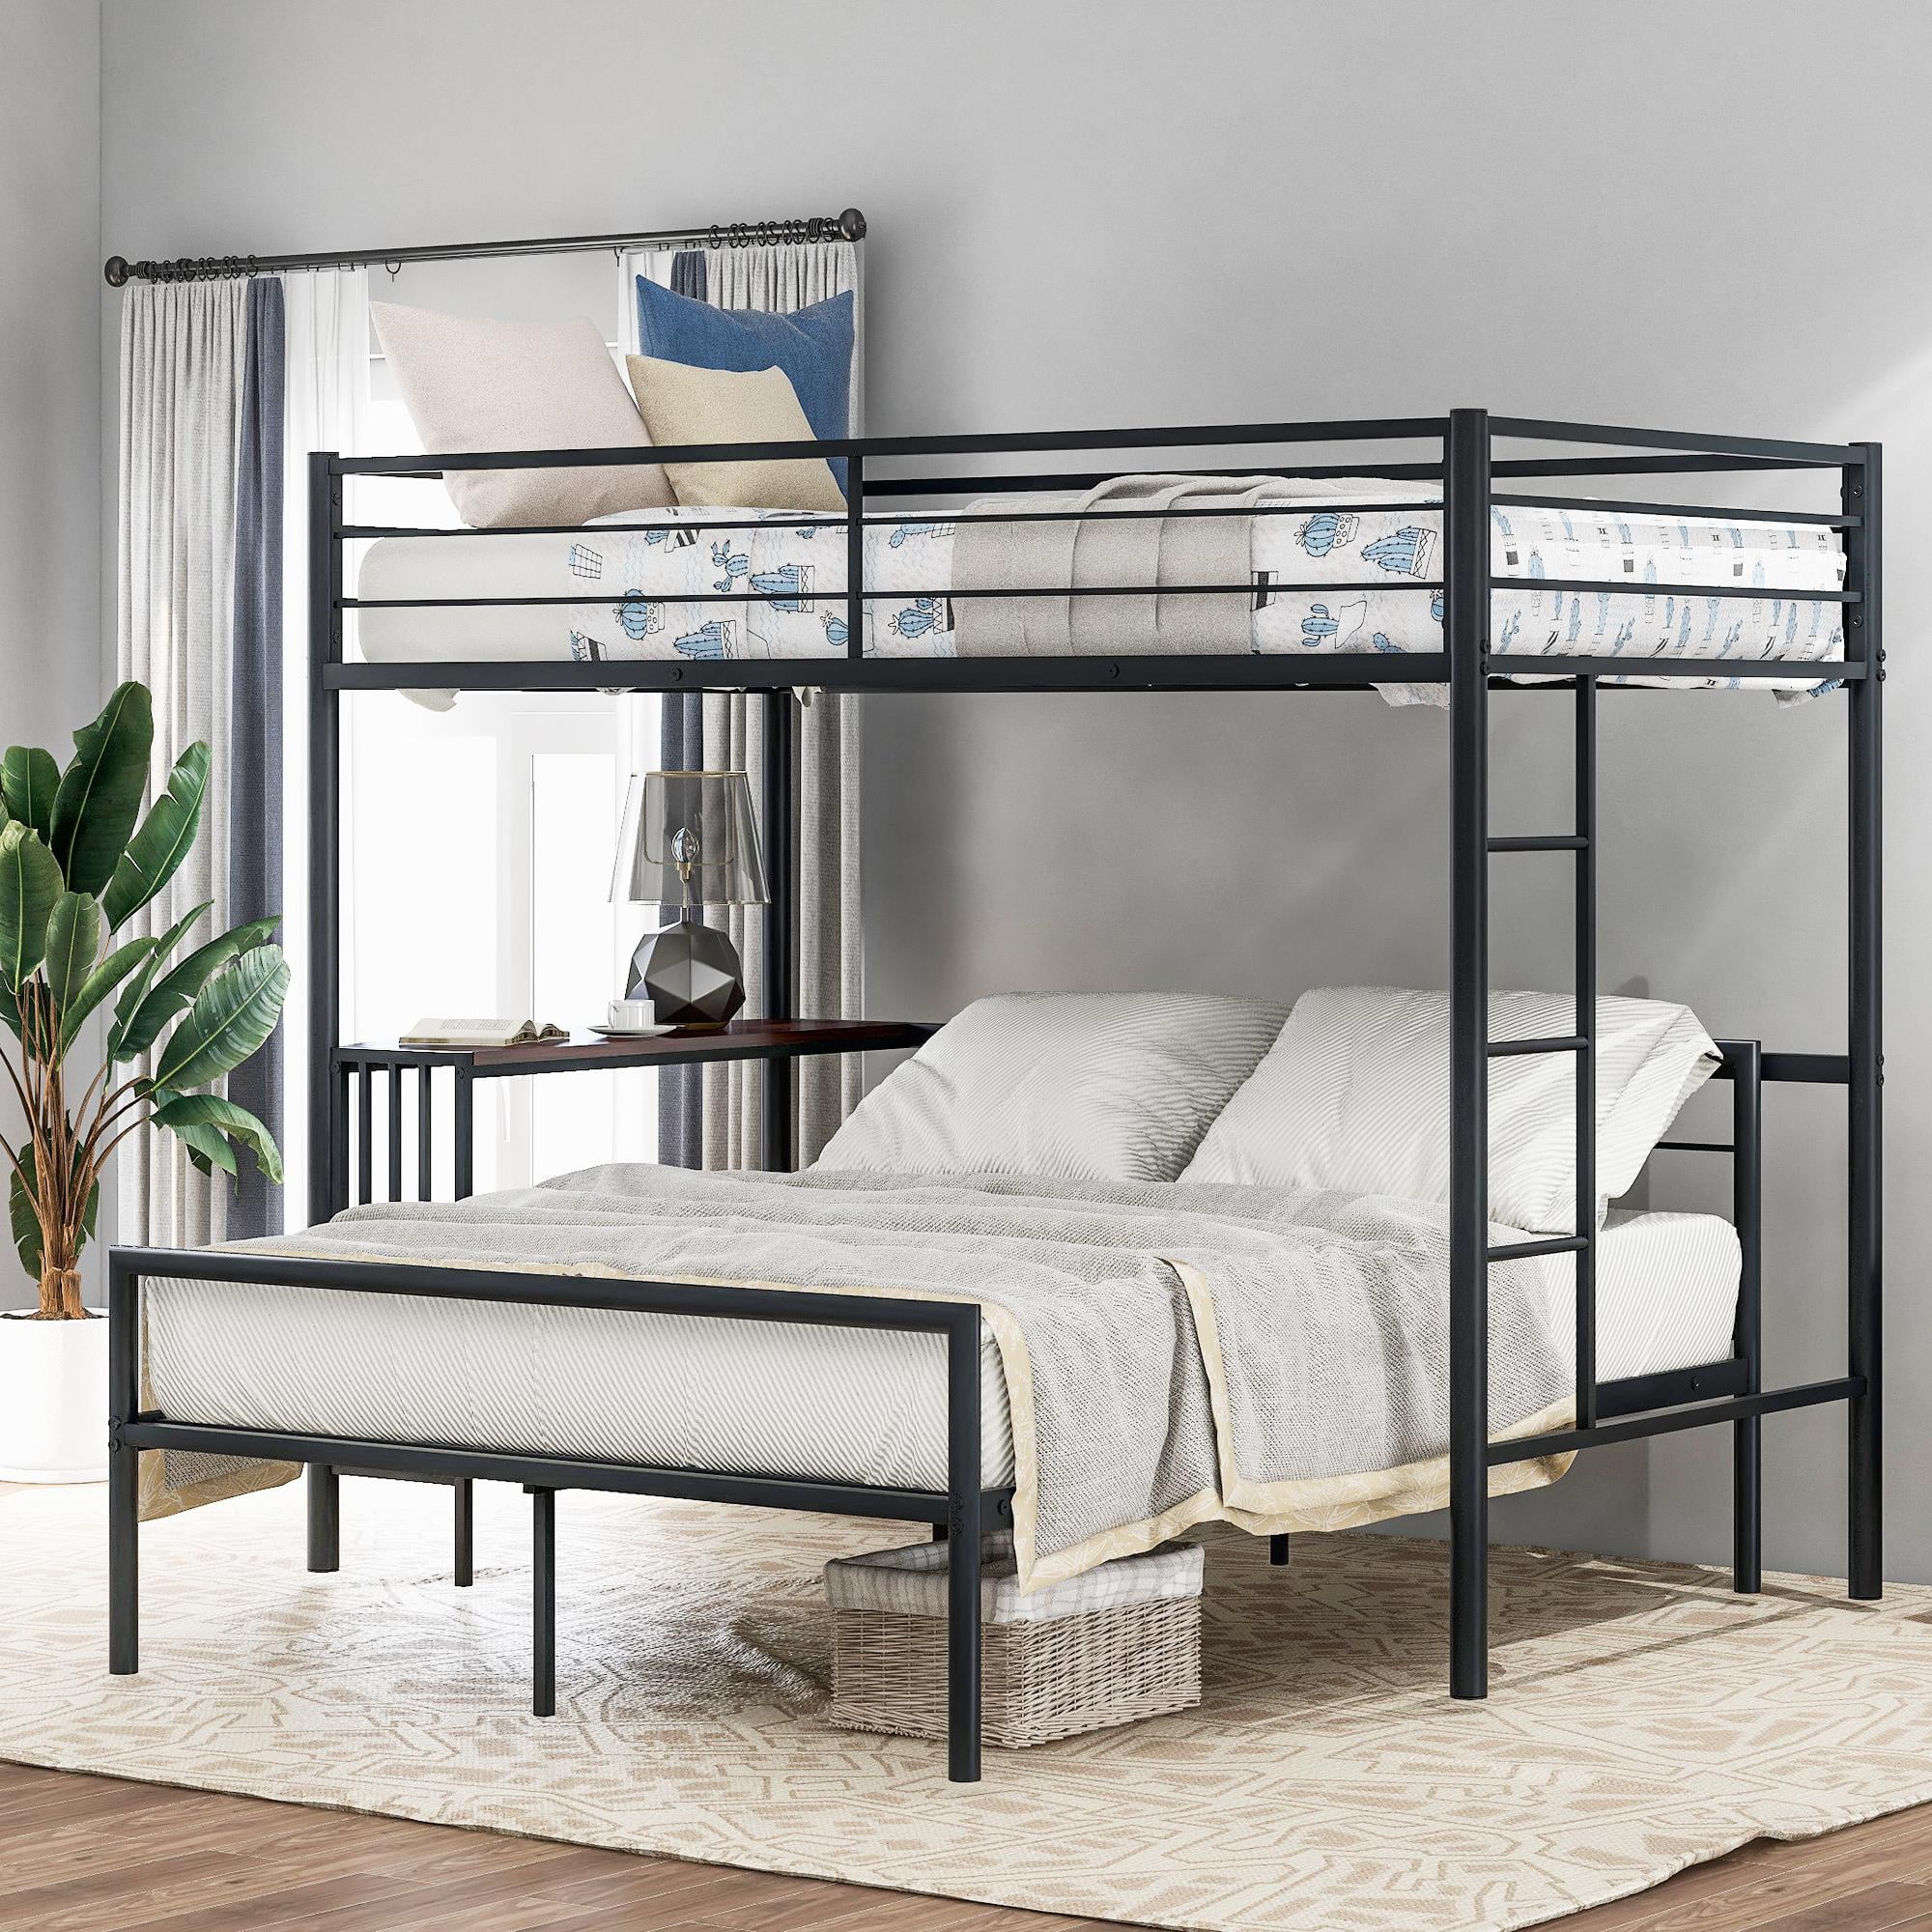 Bunk Beds For Kids Full Size Bunked Bed Frame Loft Girls Boys Bedroom Furniture 